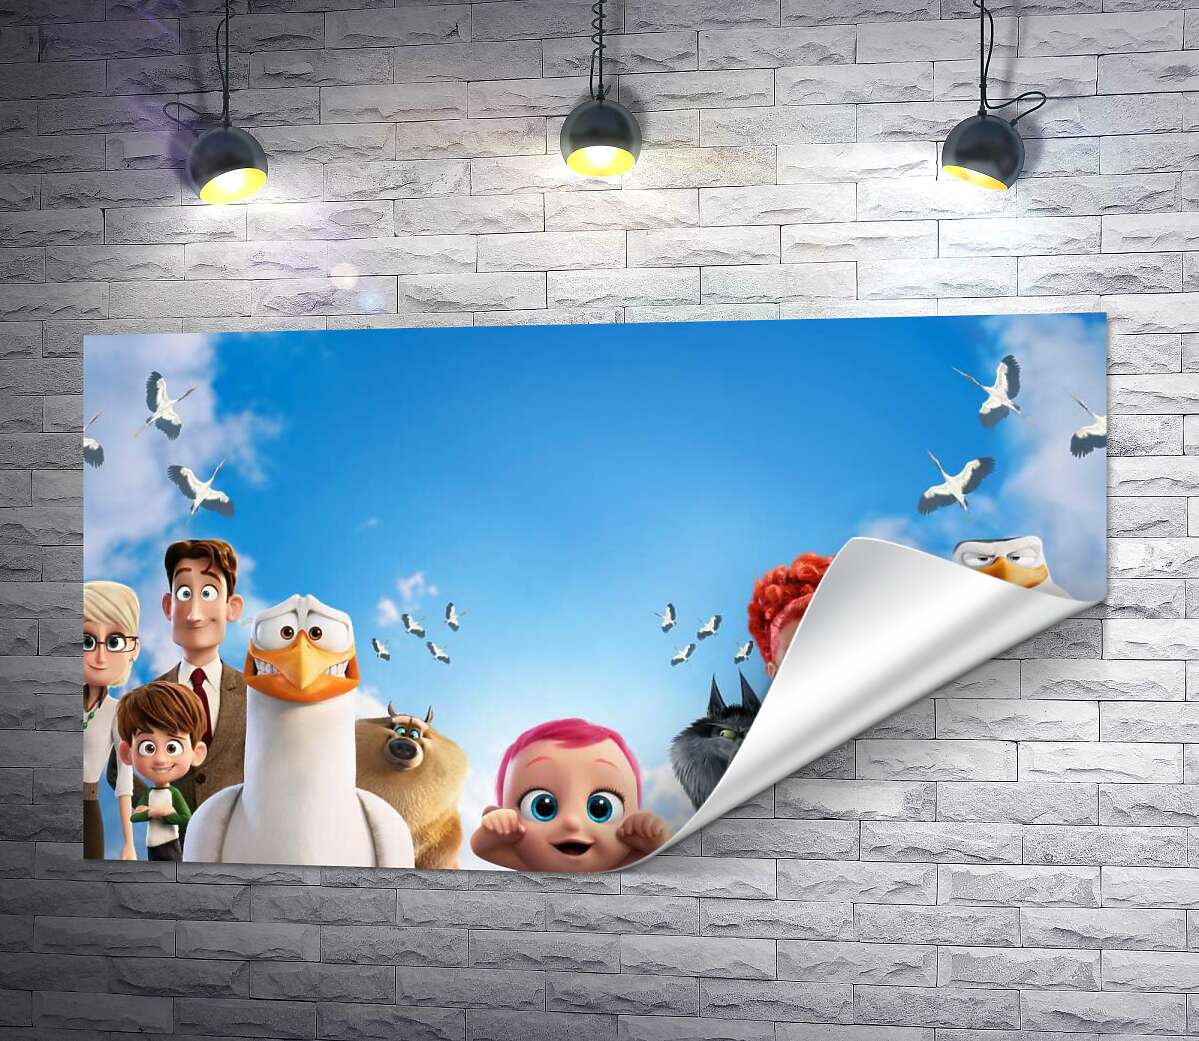 друк Веселий постер із персонажами мультфільму "Лелеки" (Storks)